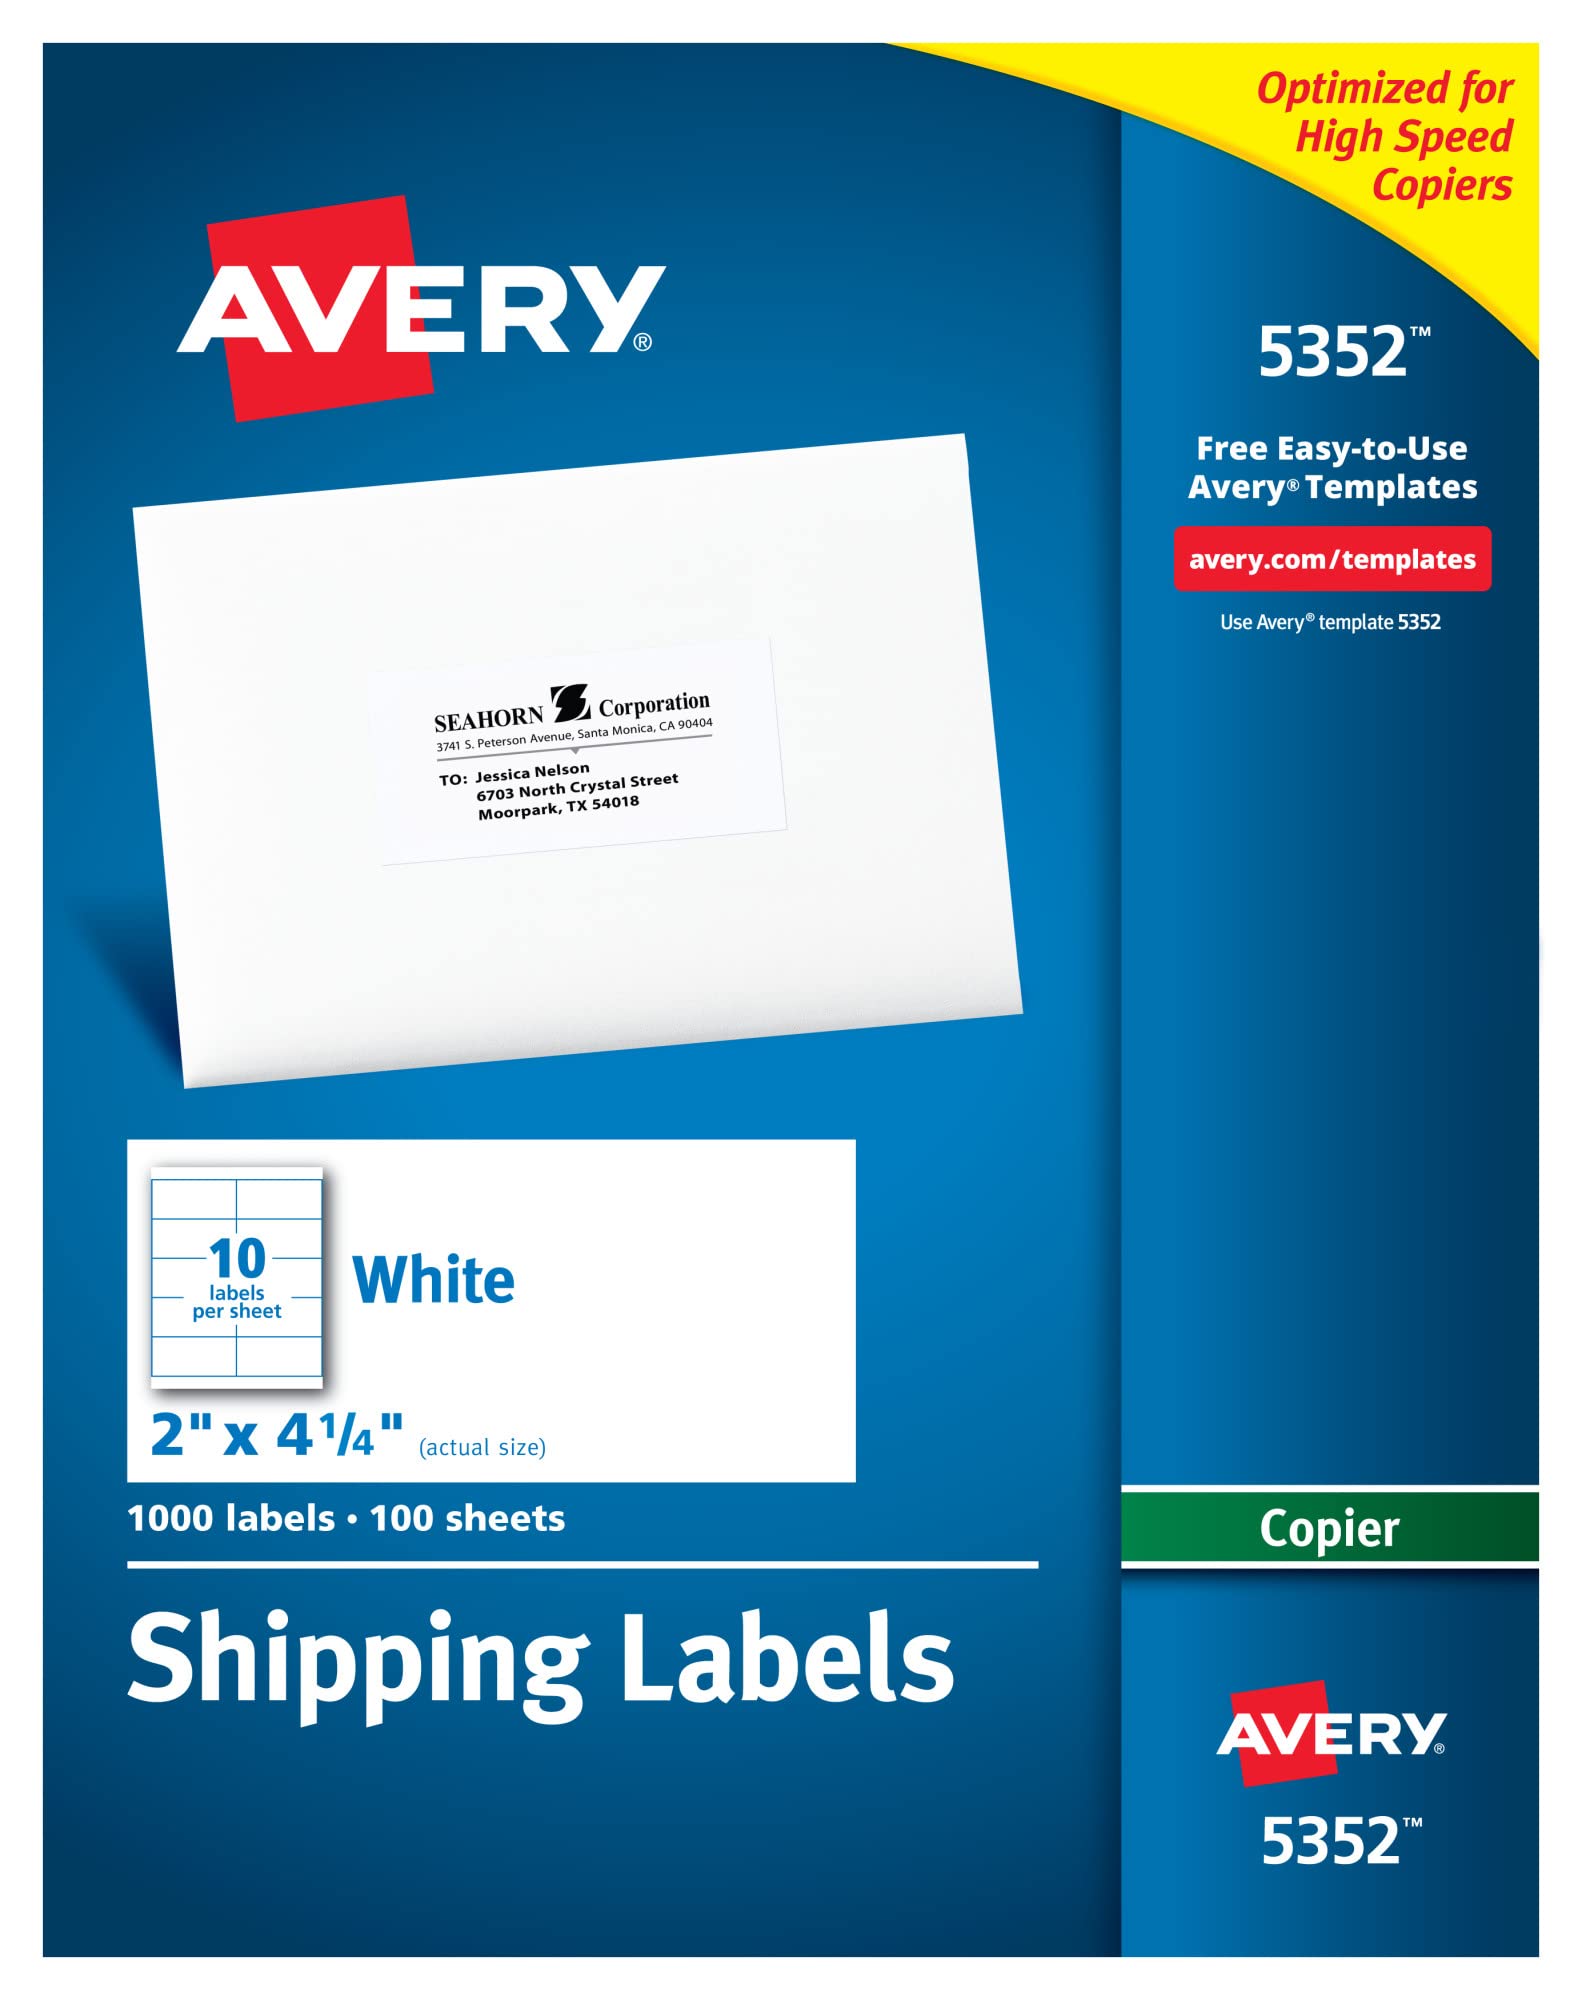 Avery Адресные этикетки для копировальных аппаратов